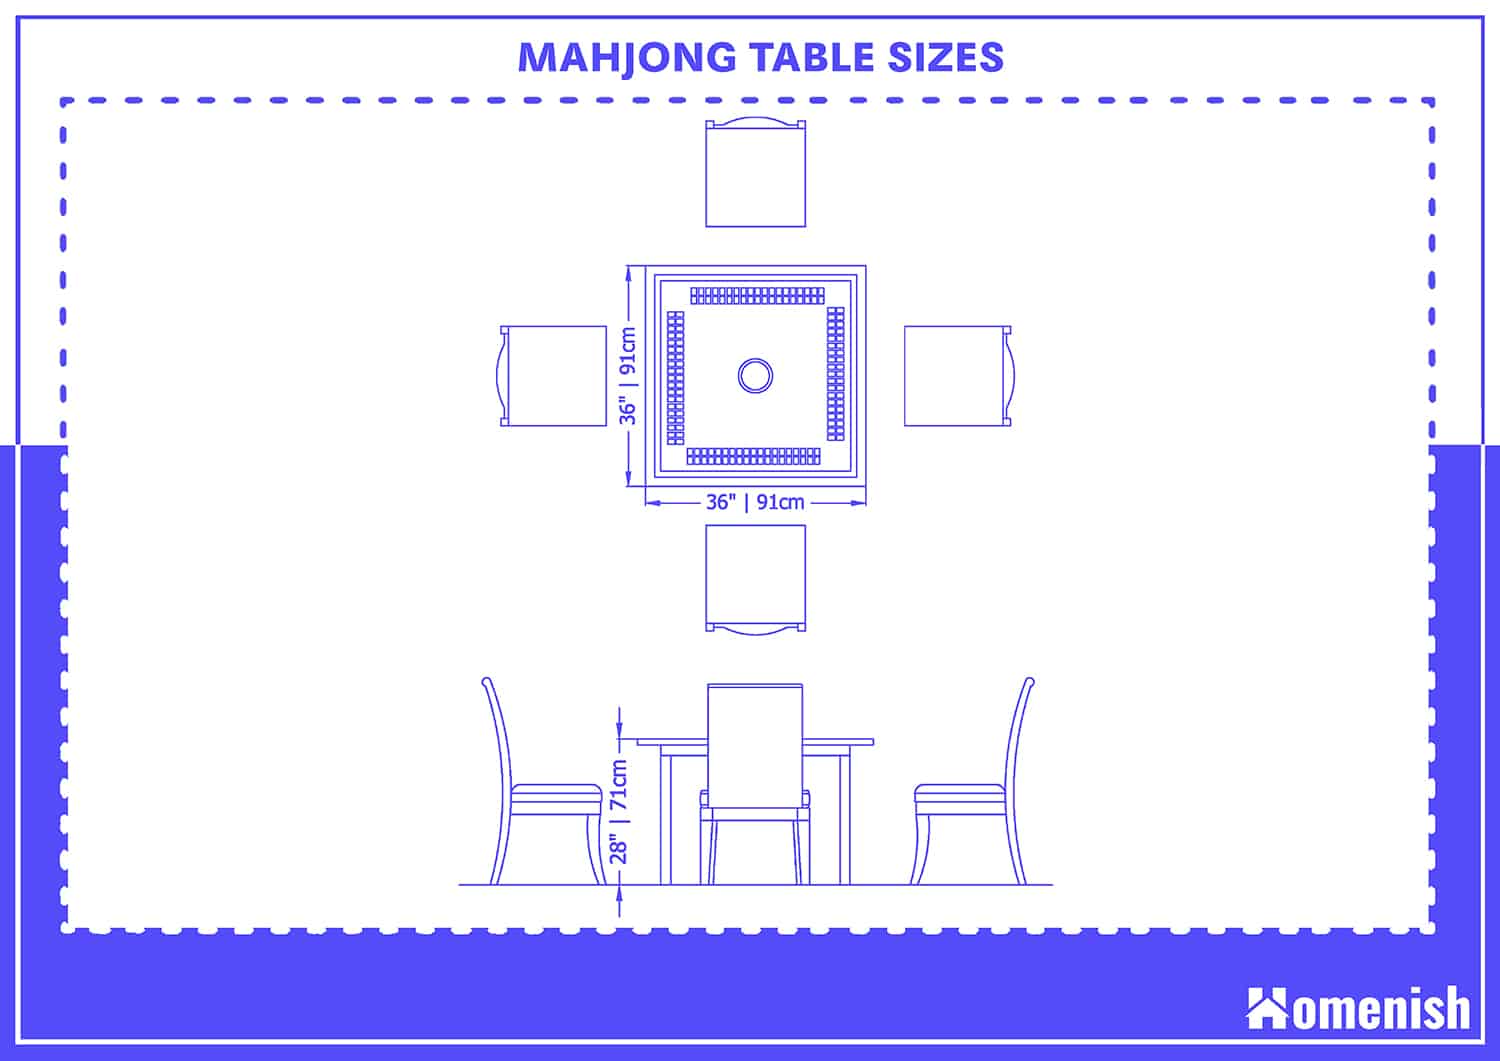 Mahjong Table Sizes